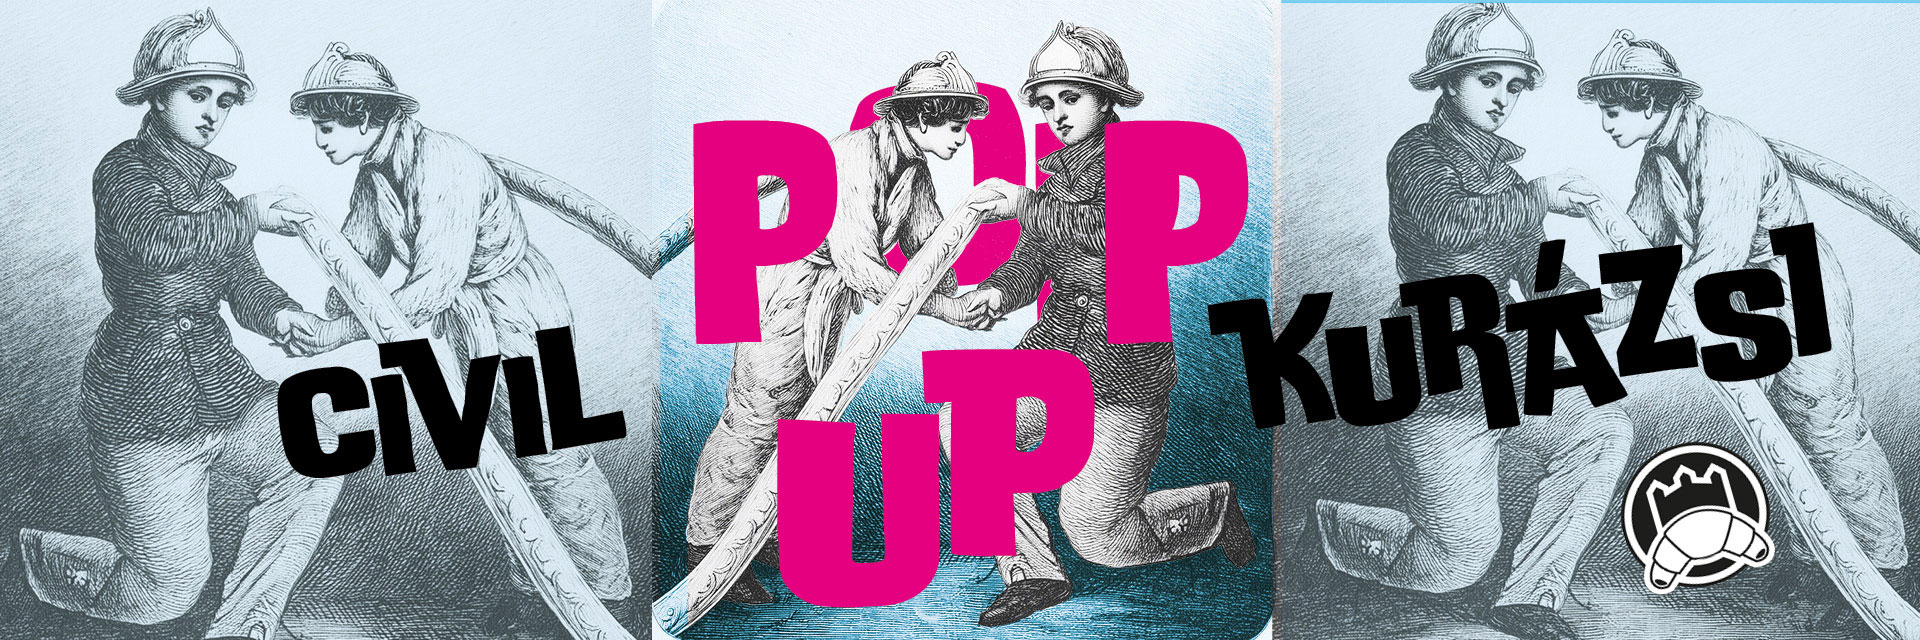 POP-UP výstava – Občianska guráž / Civilkurázs